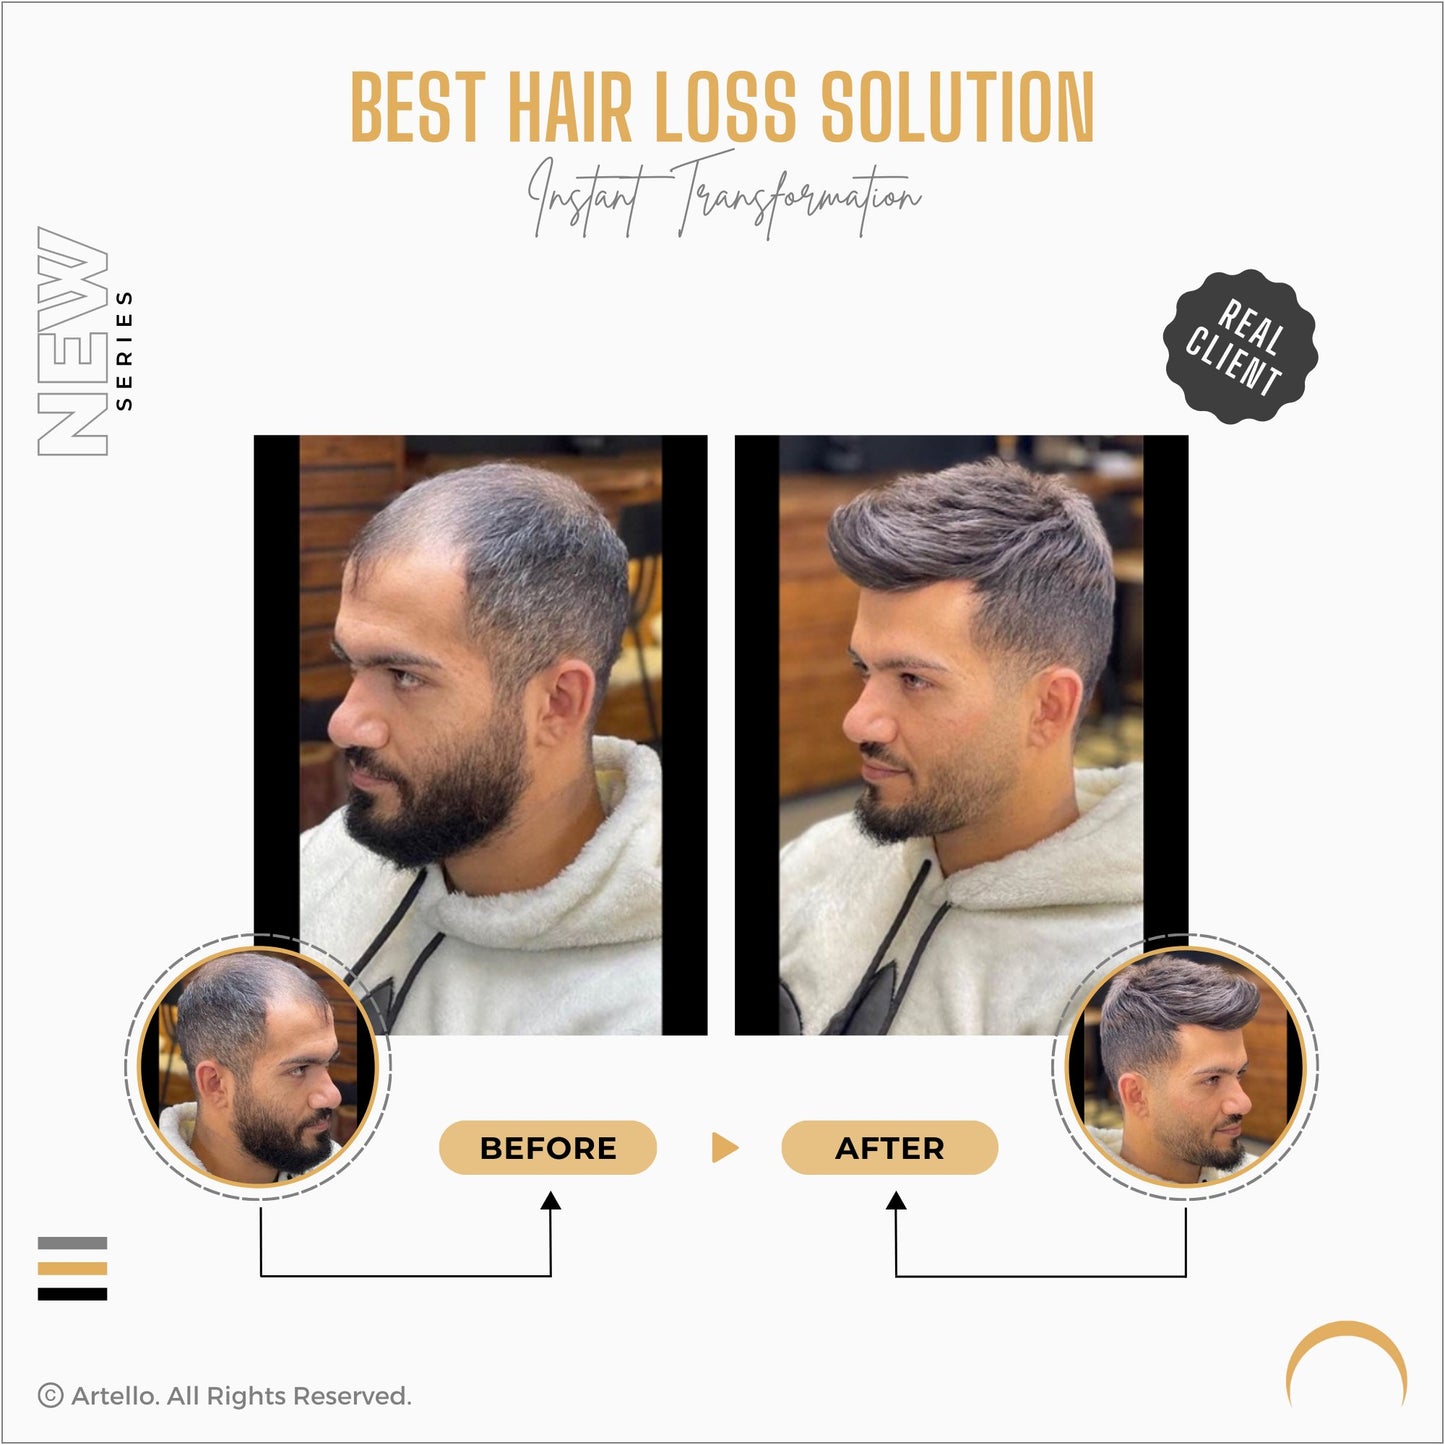 Artello® FRONT LACE Smart Hair Patch for Men - ArtelloHair Patch